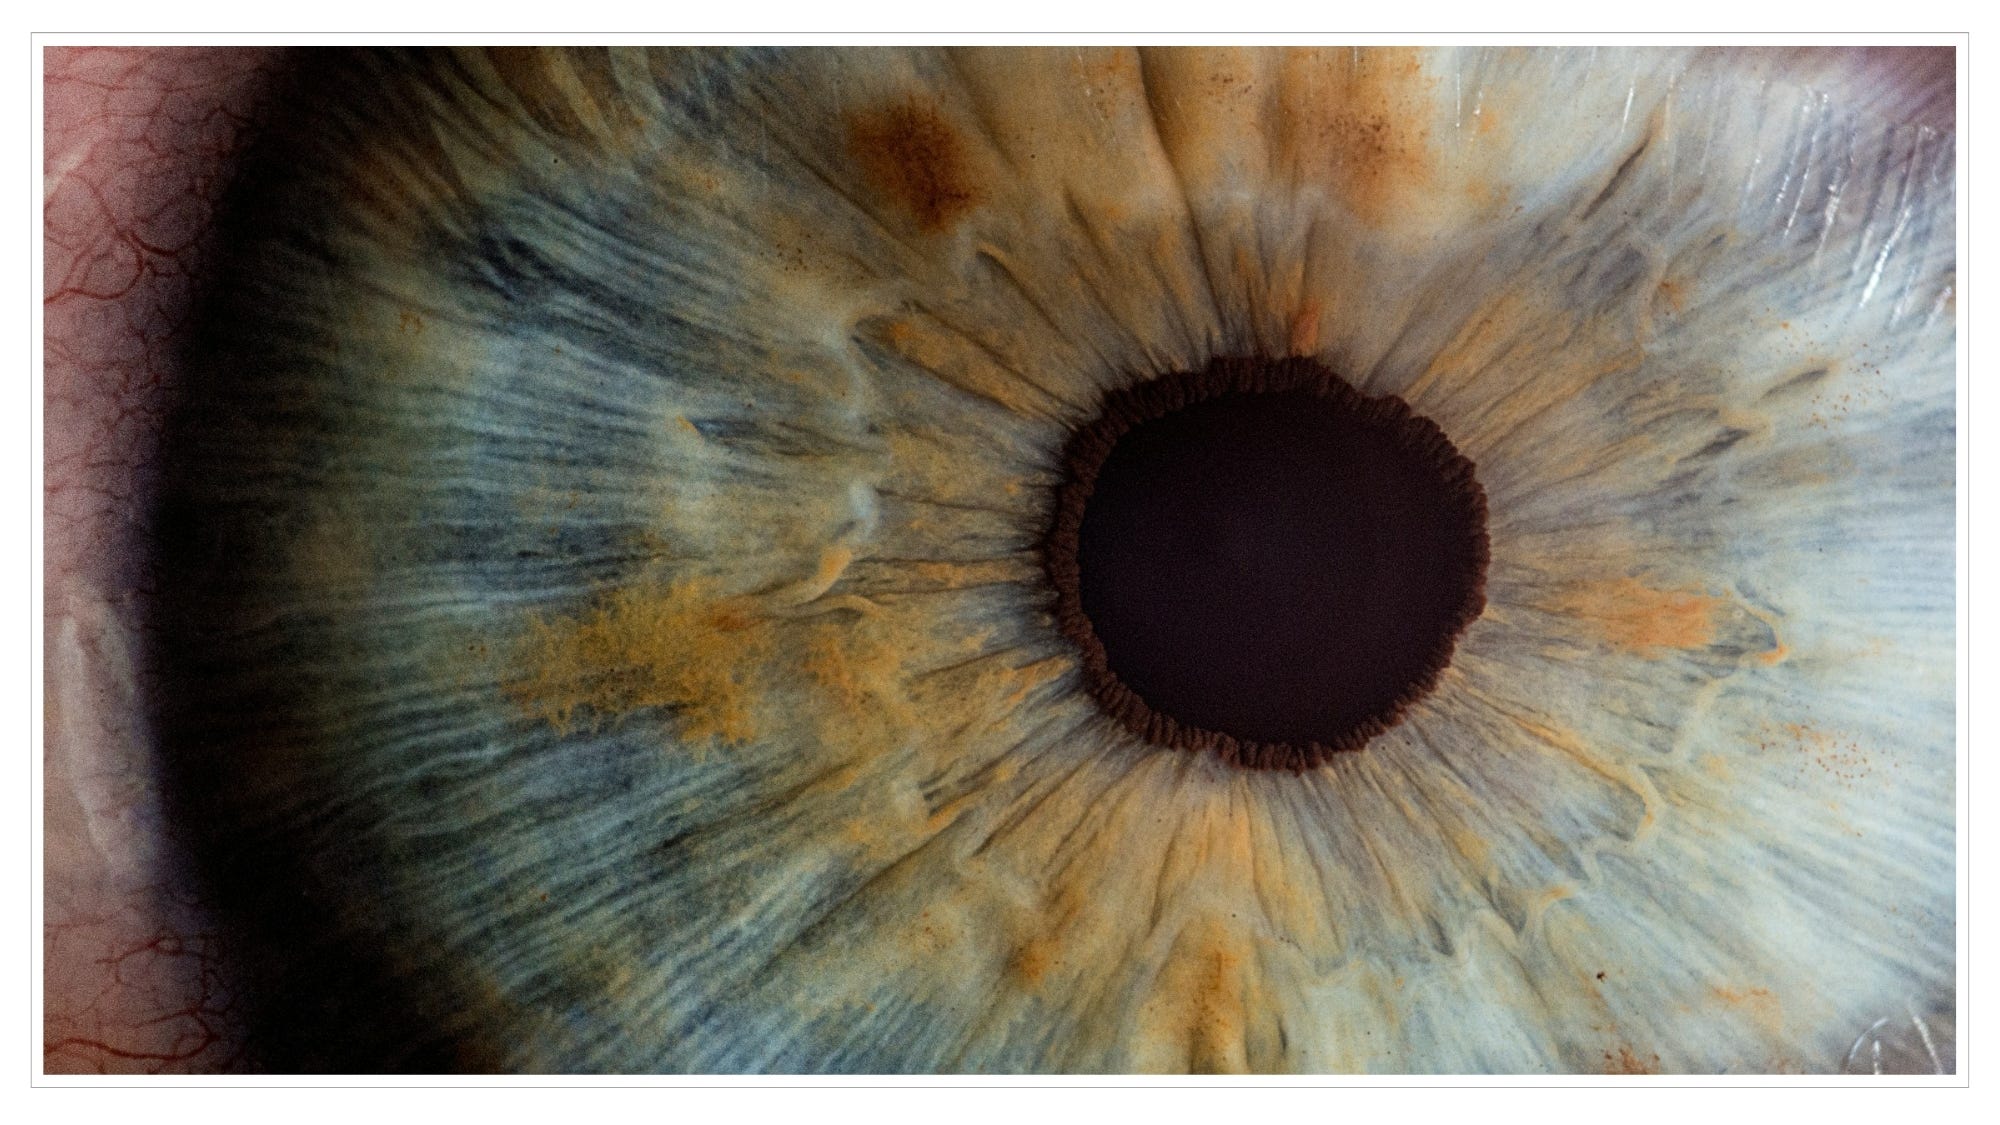 Iris & pupil of eye